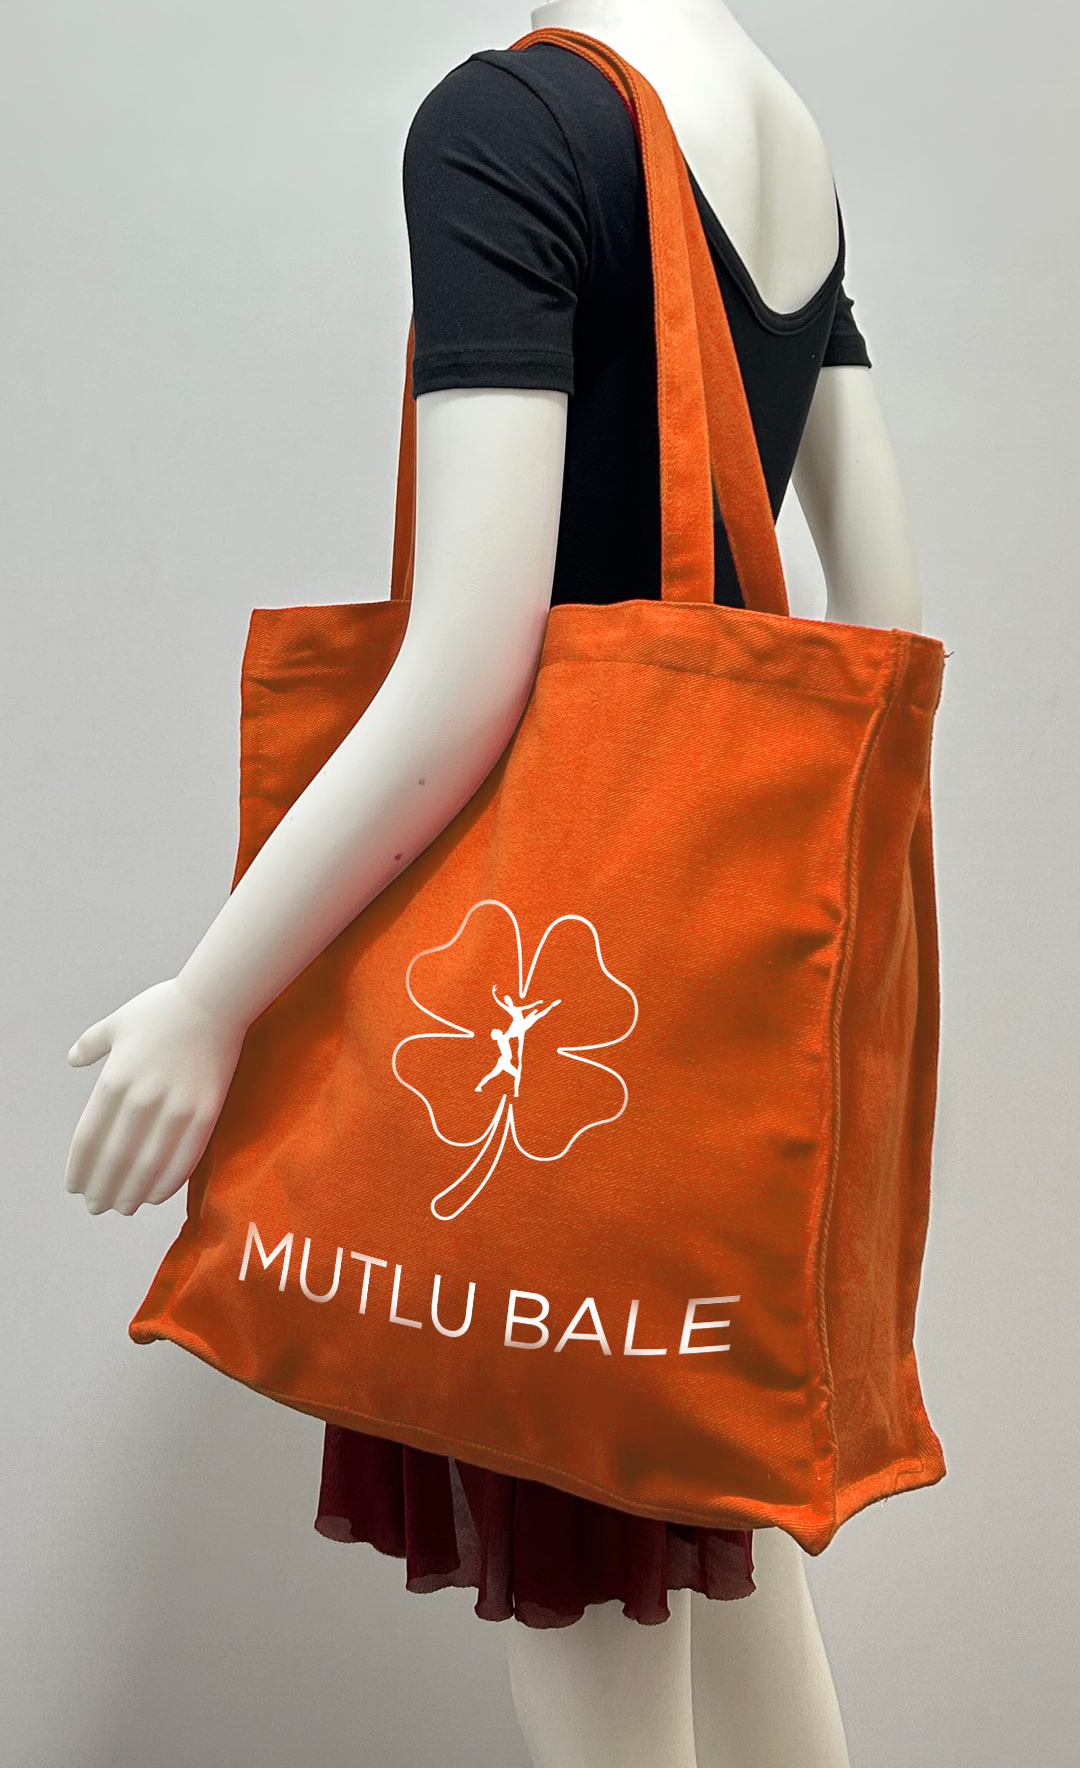 MUTLU BALE - Mutlu Bale Tote Bag (1)